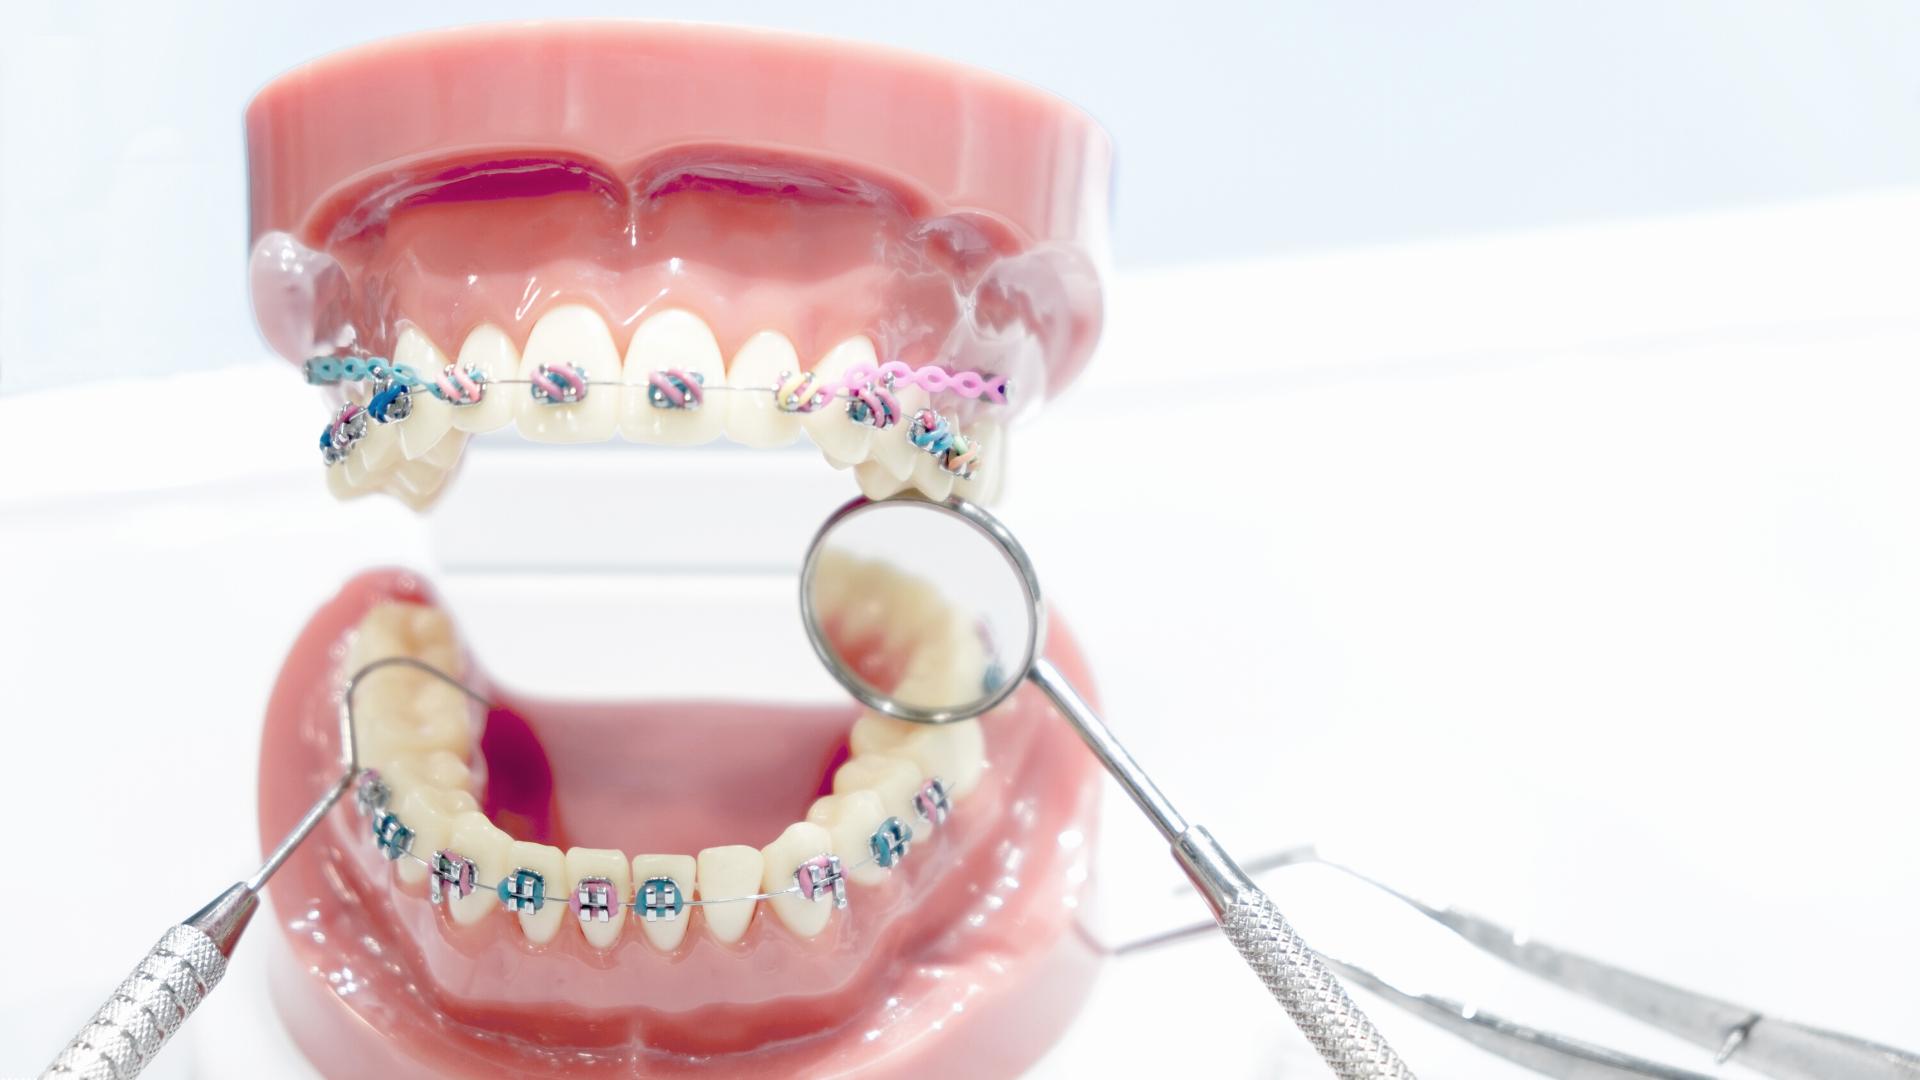 Diferencia entre odontólogo y ortodoncista